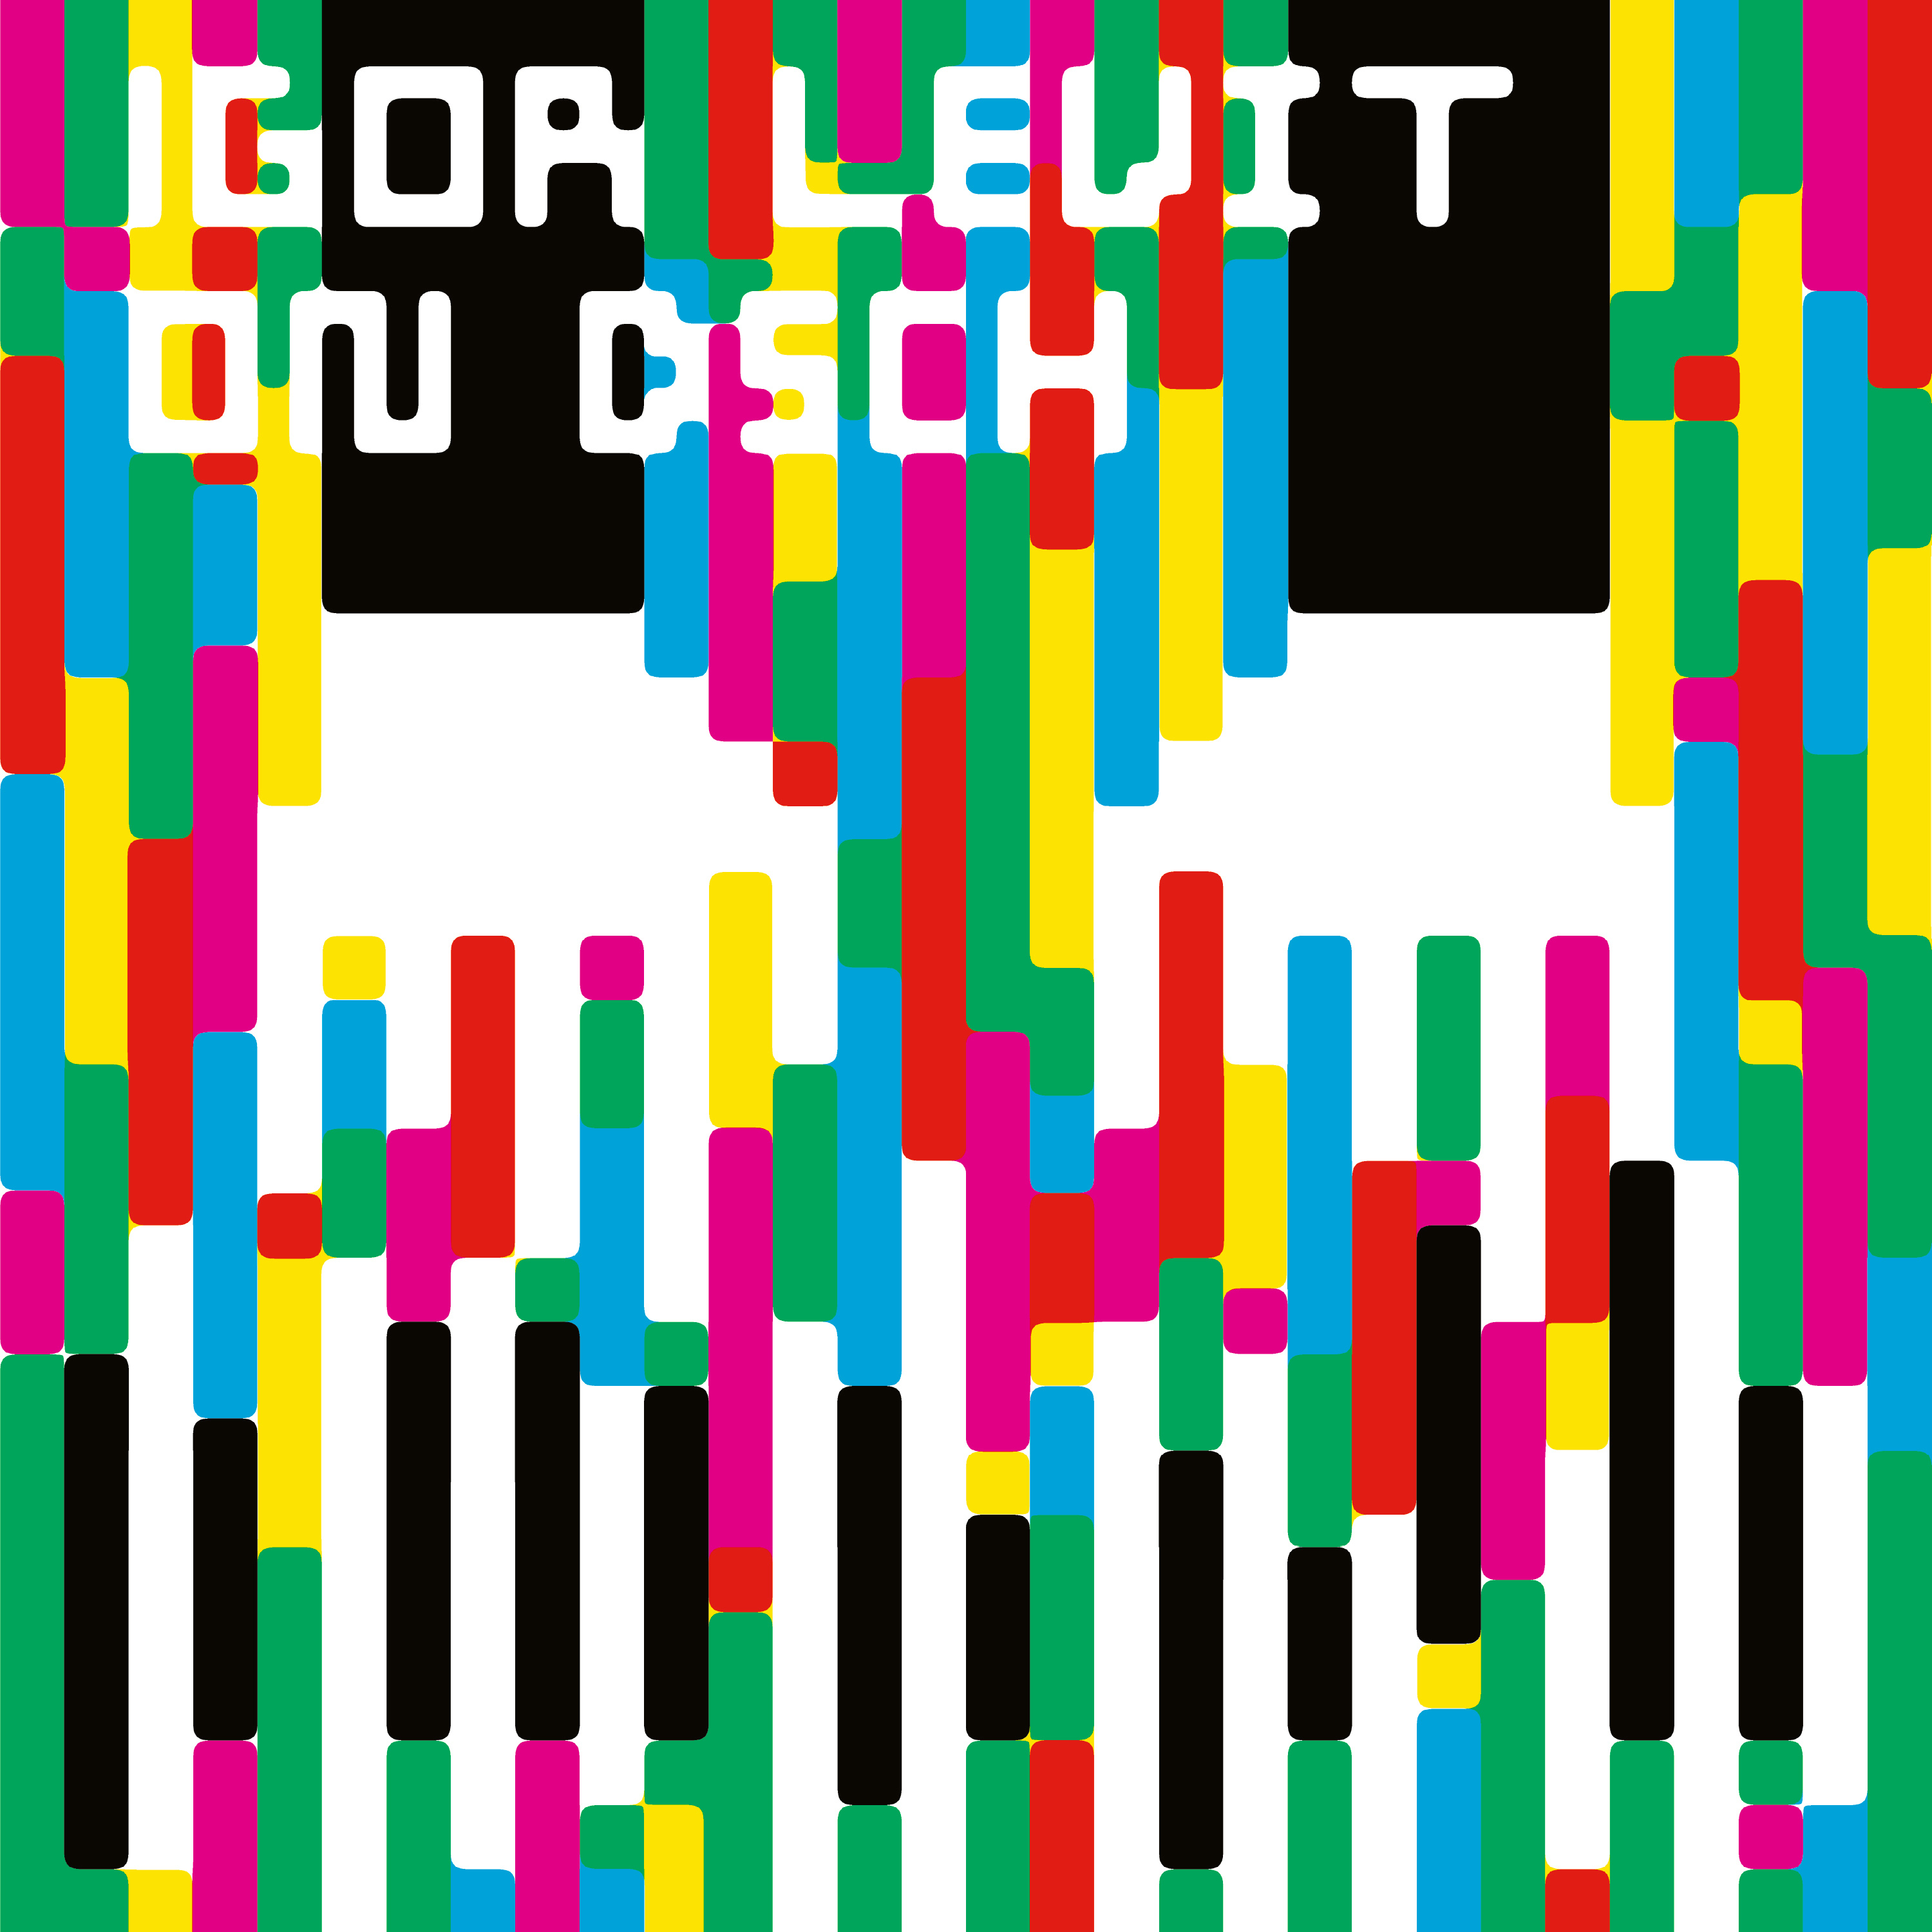 Igor Levit_ON DSCH_Album Cover.jpg